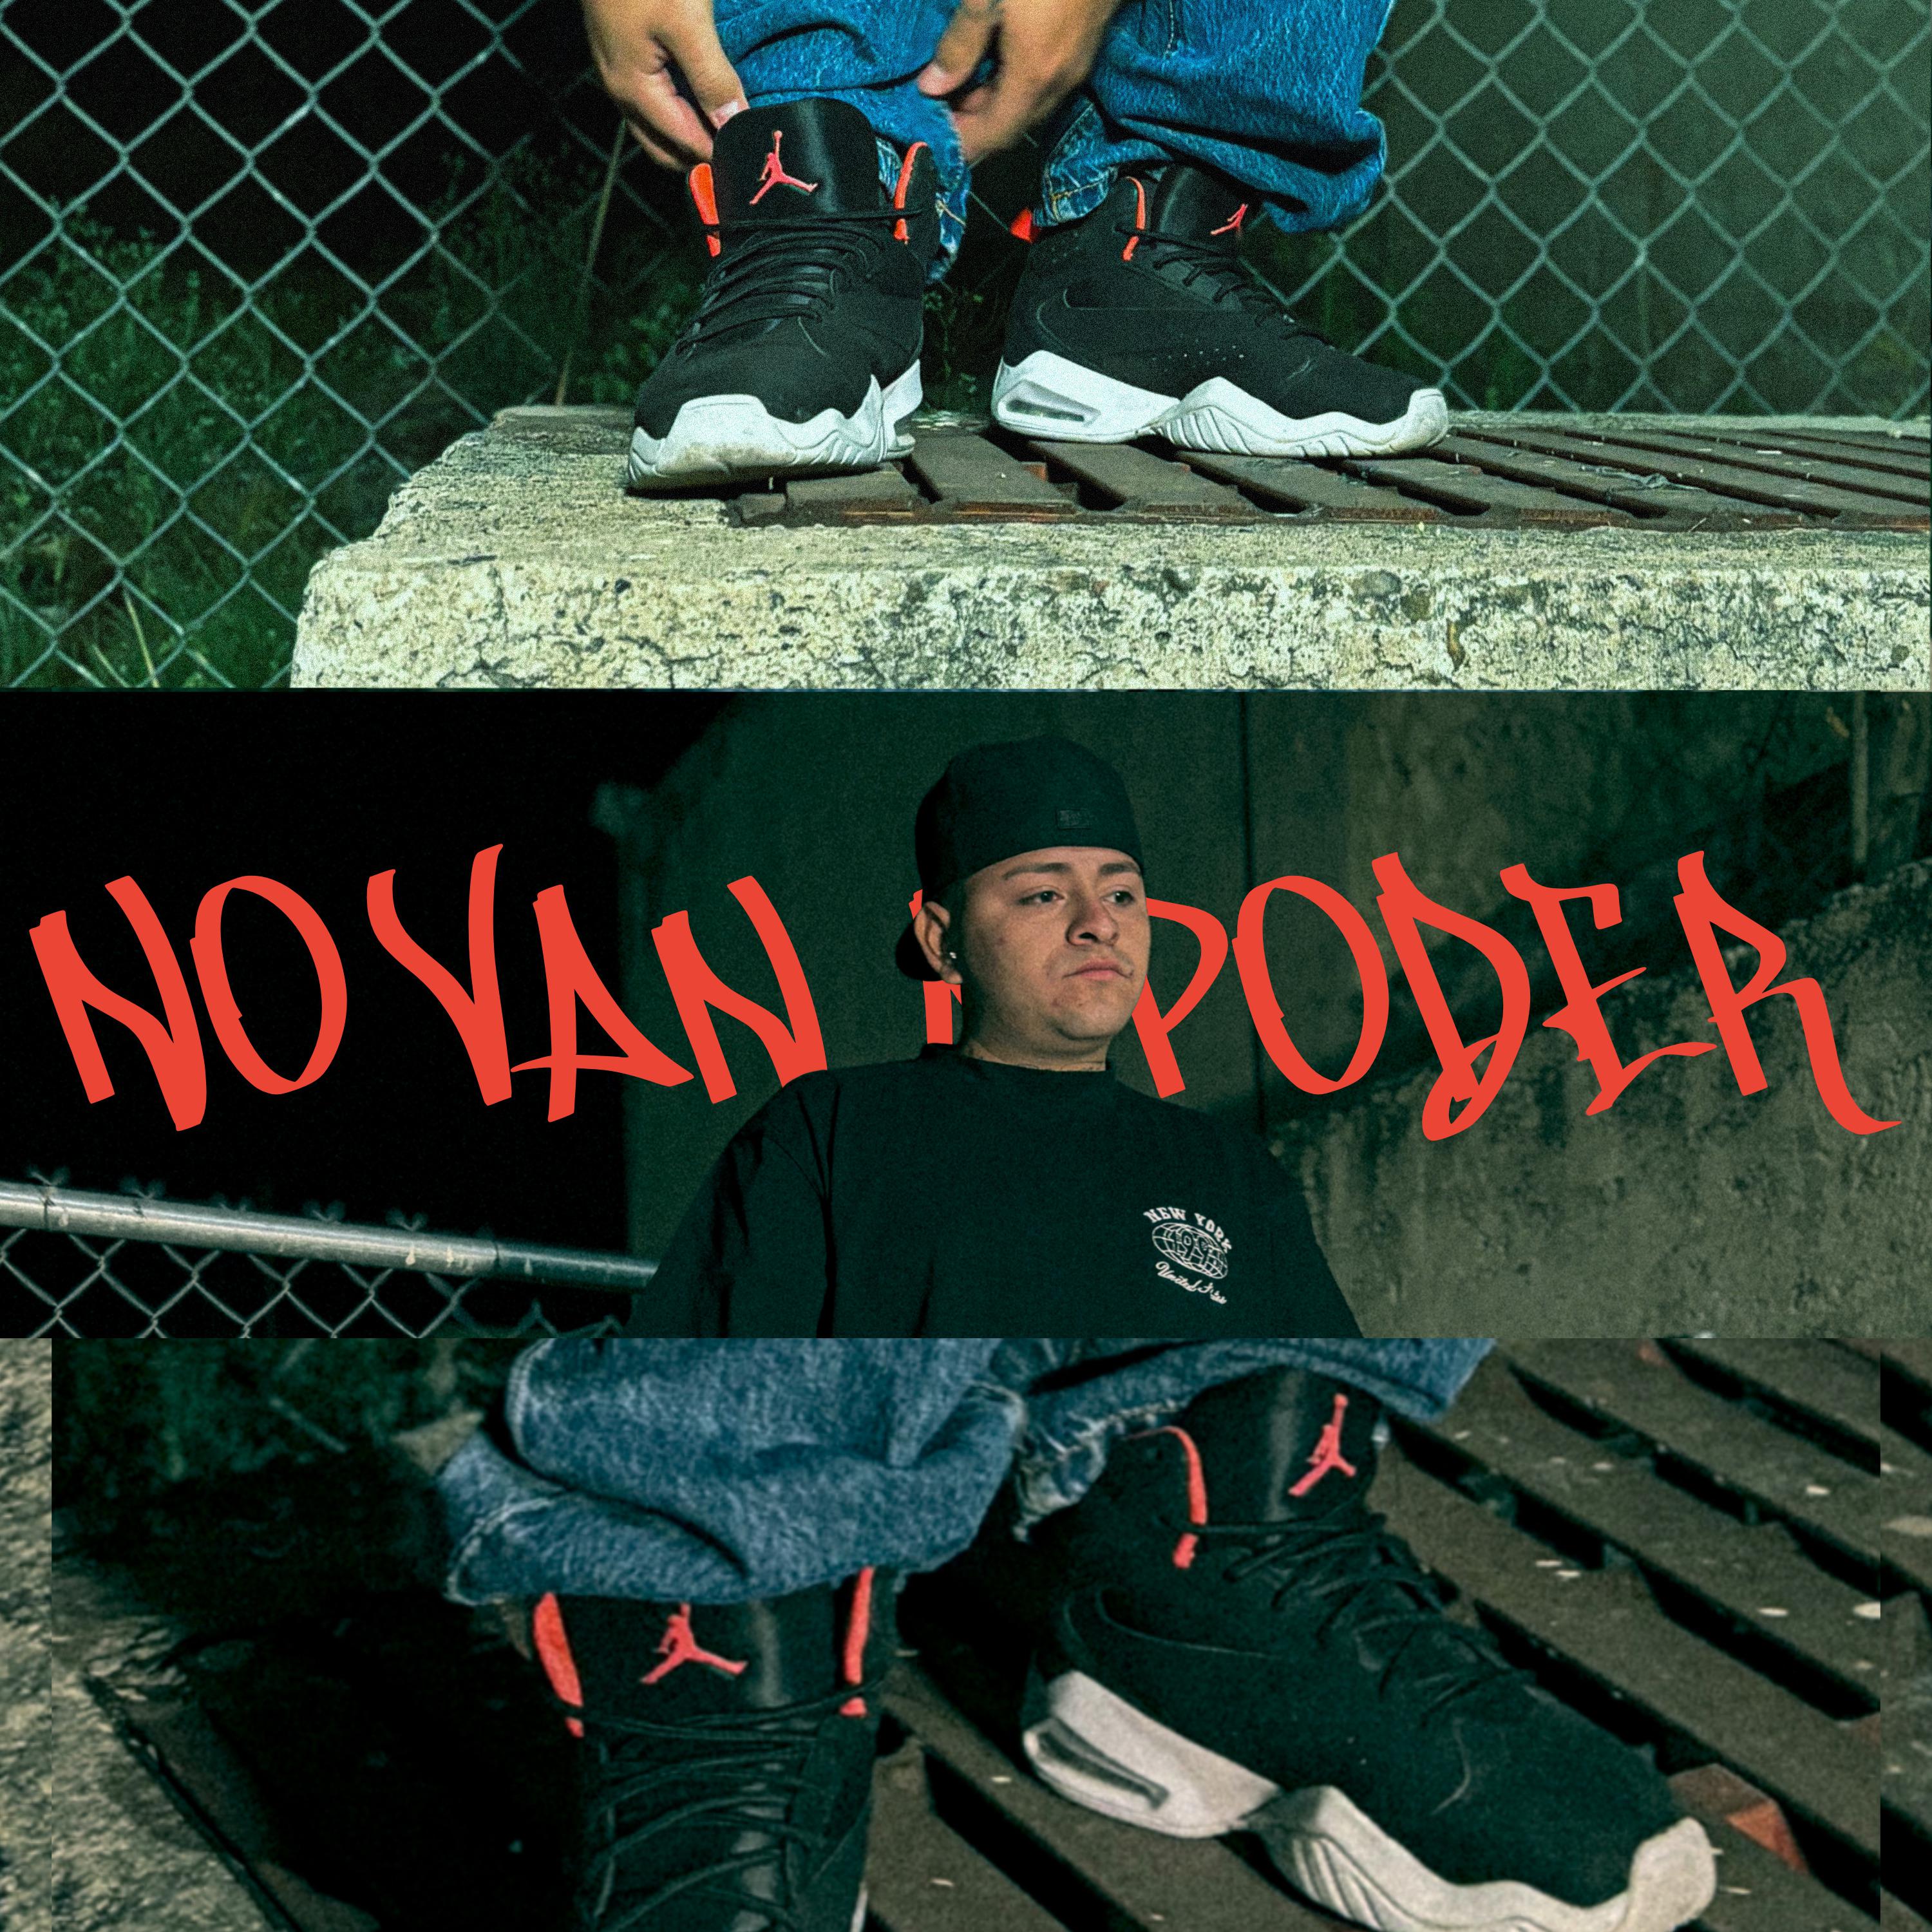 Постер альбома No Van a Poder